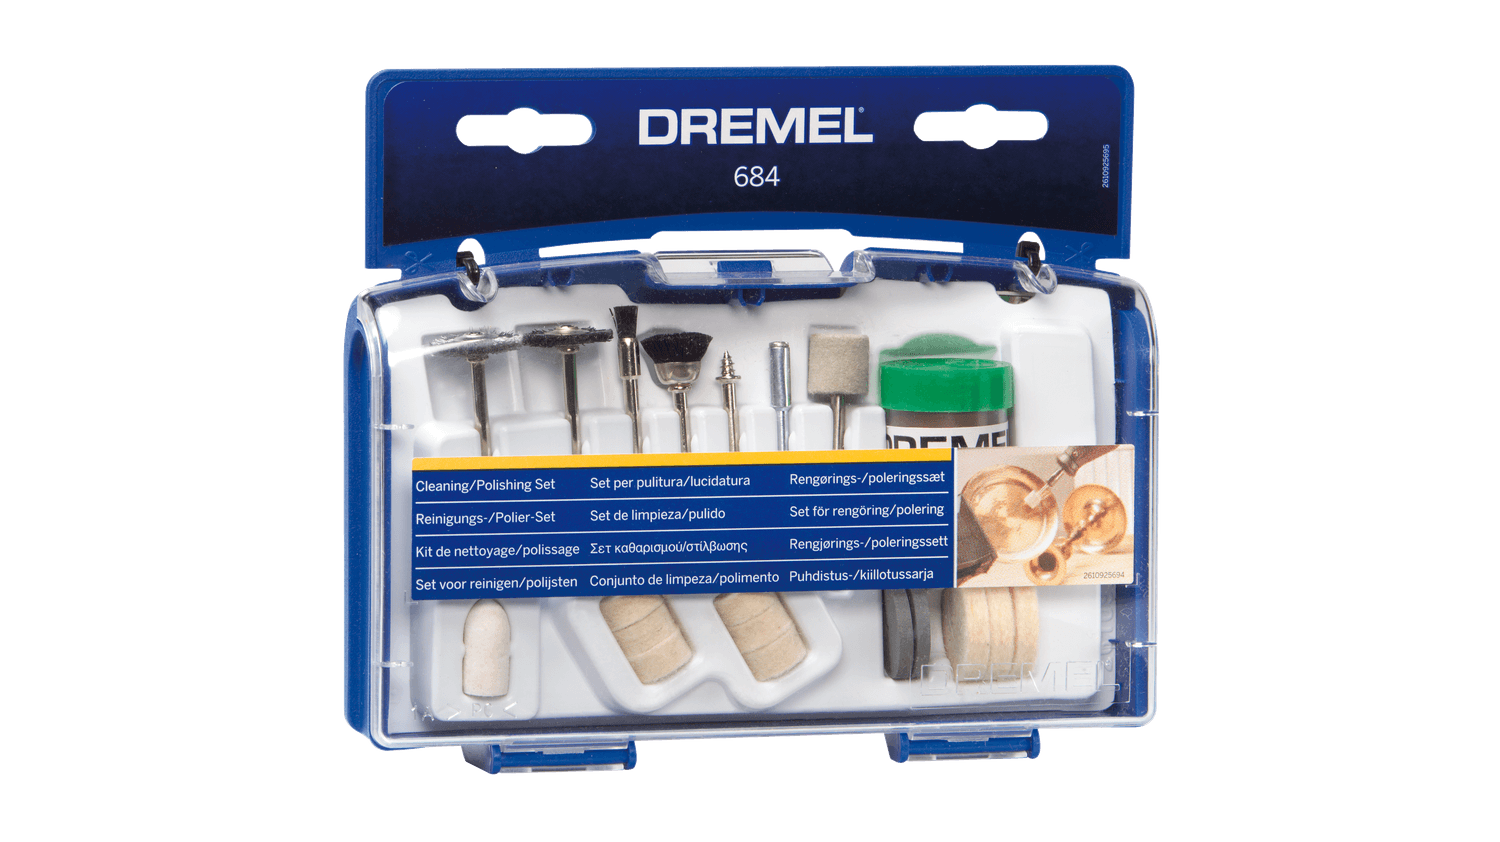 Dremel 684 Cleaning / Polishing set